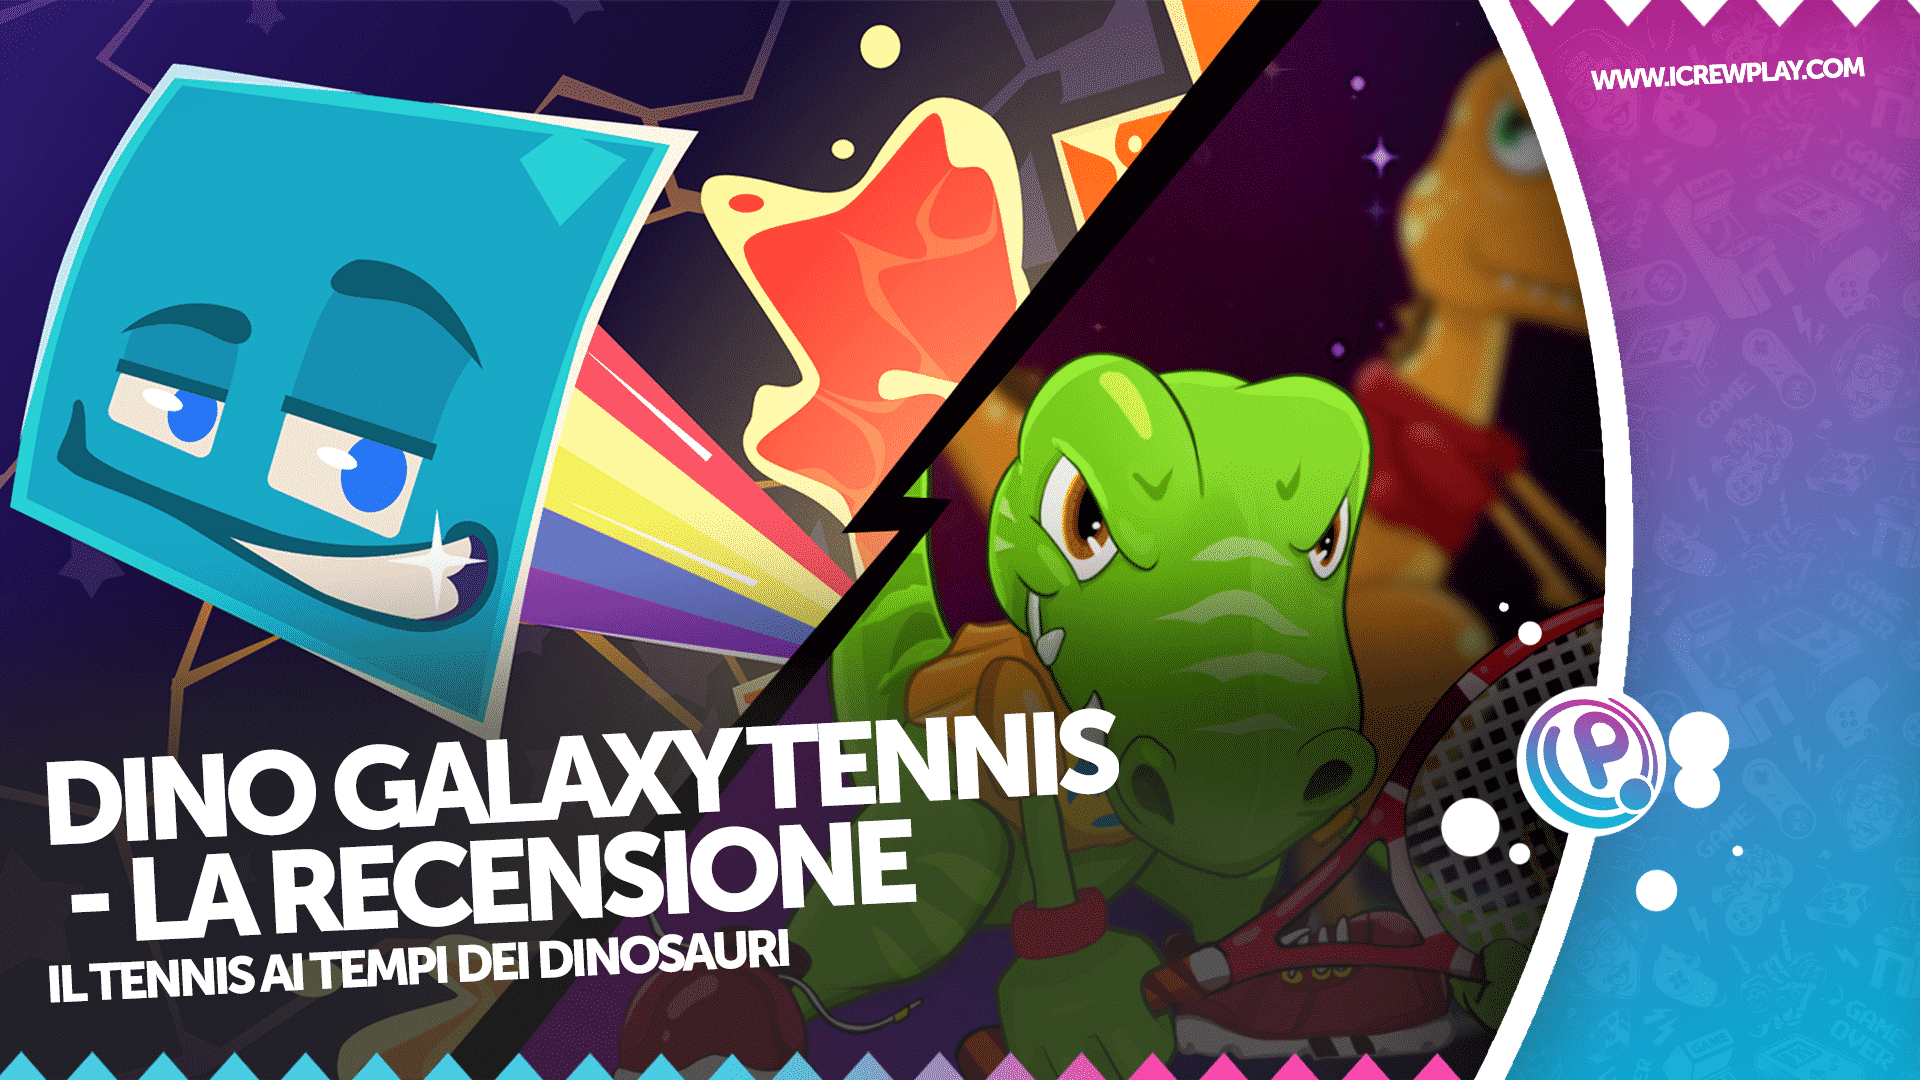 Dino Galaxy Tennis - la recensione 2